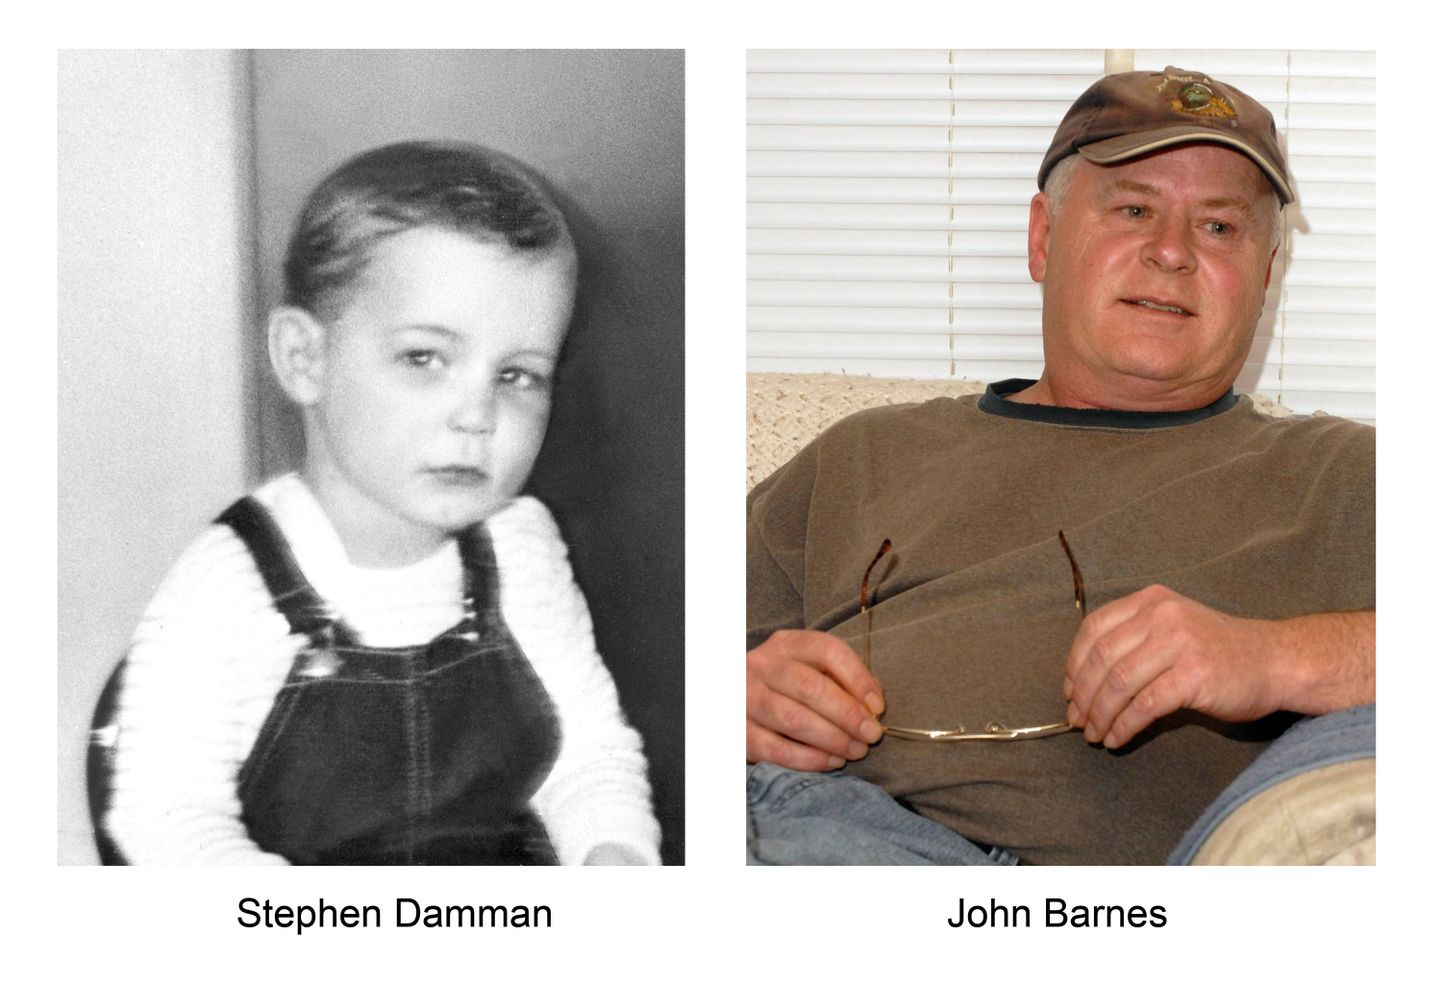 DNA-testid näitasid, et John Barnes ei ole Steven Damman